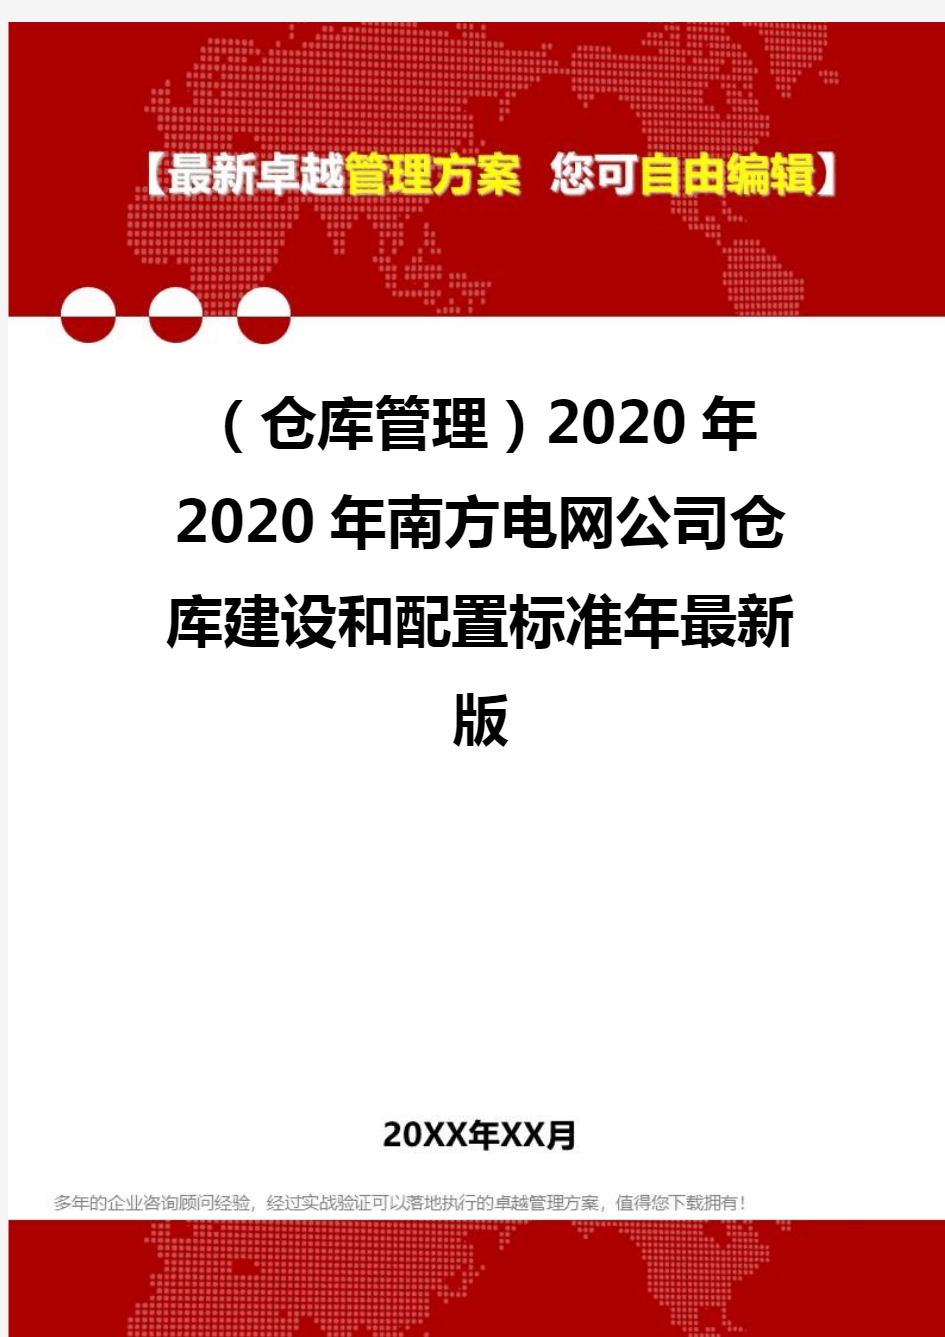 2020(仓库管理)2020年2020年南方电网公司仓库建设和配置标准年最新版